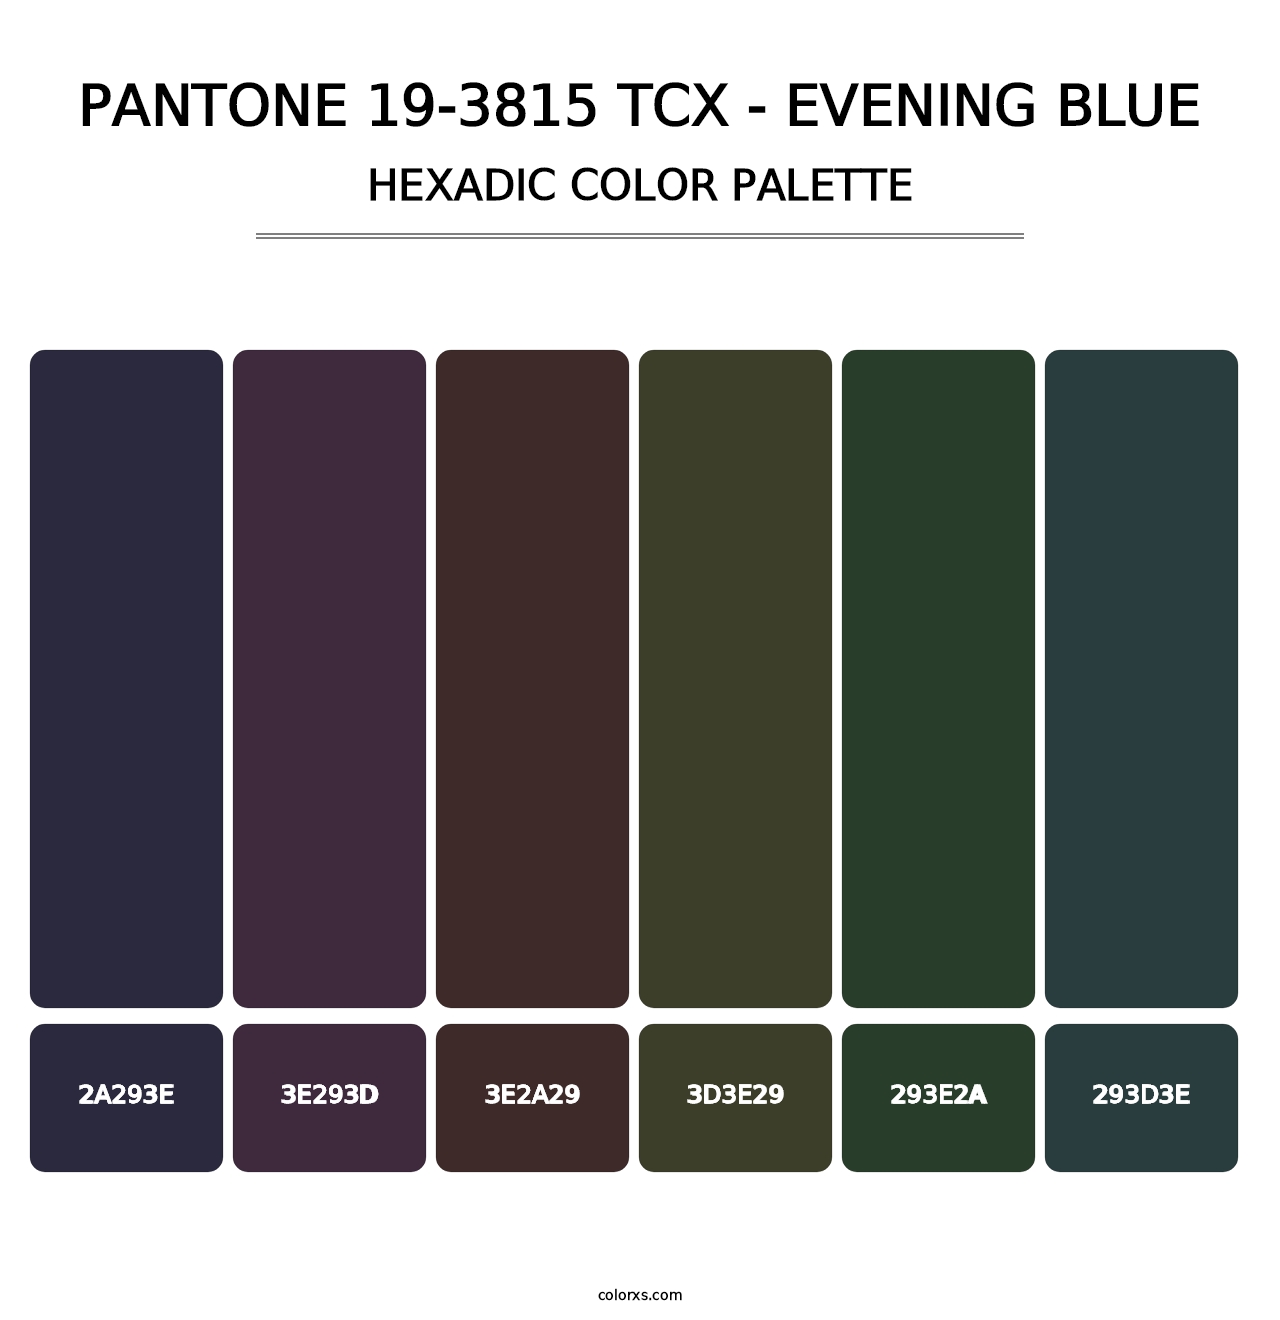 PANTONE 19-3815 TCX - Evening Blue - Hexadic Color Palette